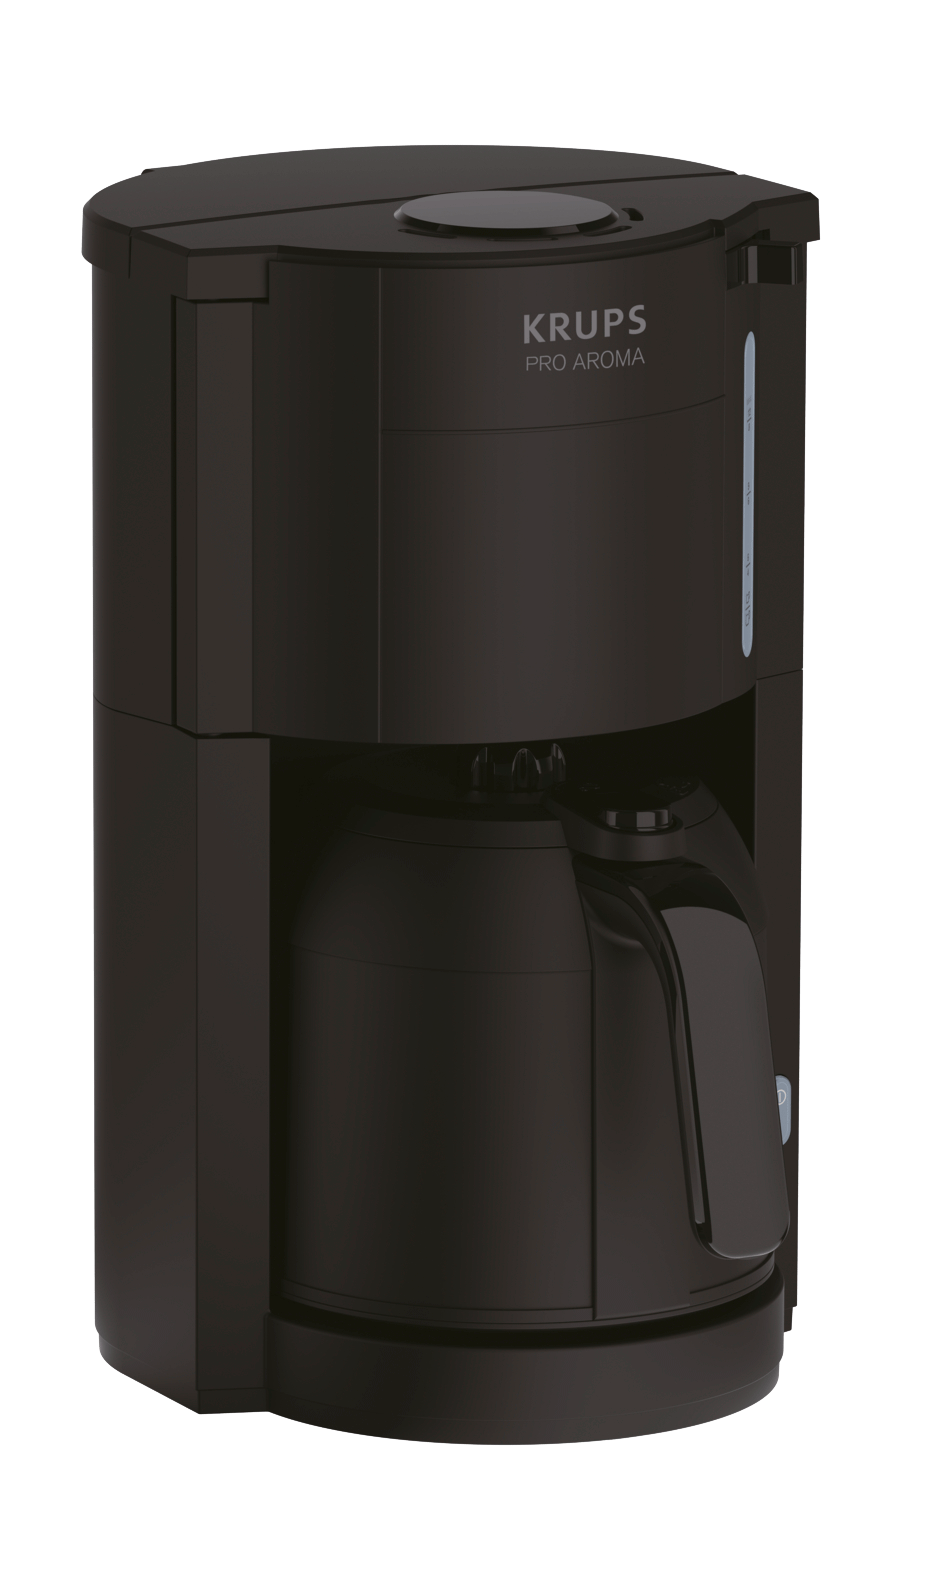 Krups filterkoffiezetapparaat Pro Aroma, koffiekan 1 l